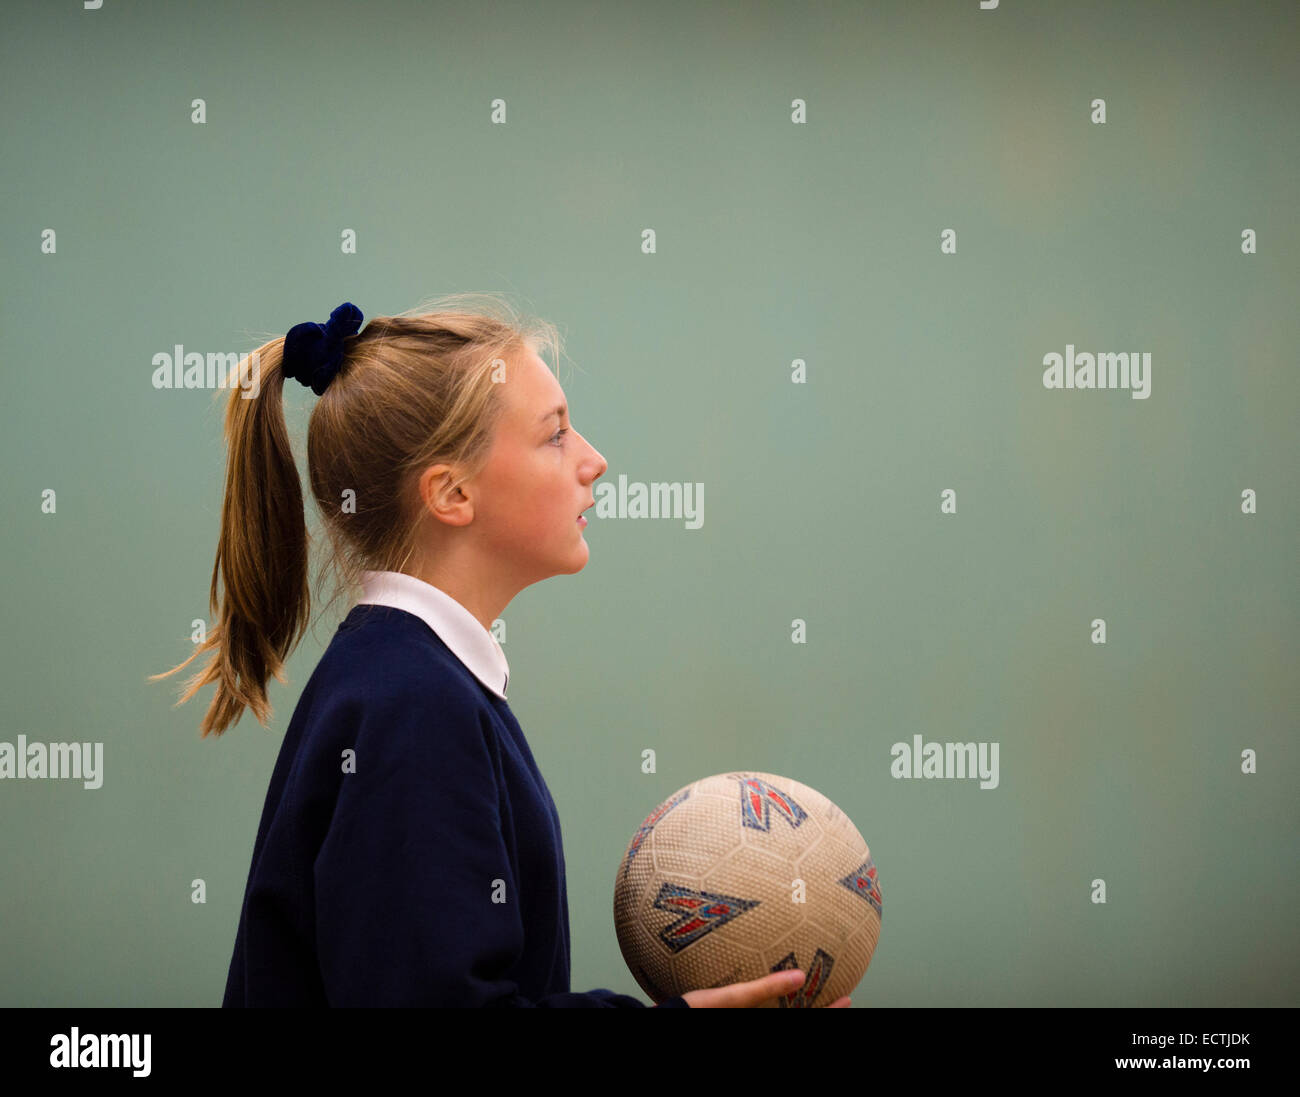 Scuola secondaria educazione fisica Wales UK: una ragazza adolescente in profilo a giocare una palla di gioco netball basket tenendo una palla in palestra, i suoi capelli in una coda di cavallo Foto Stock